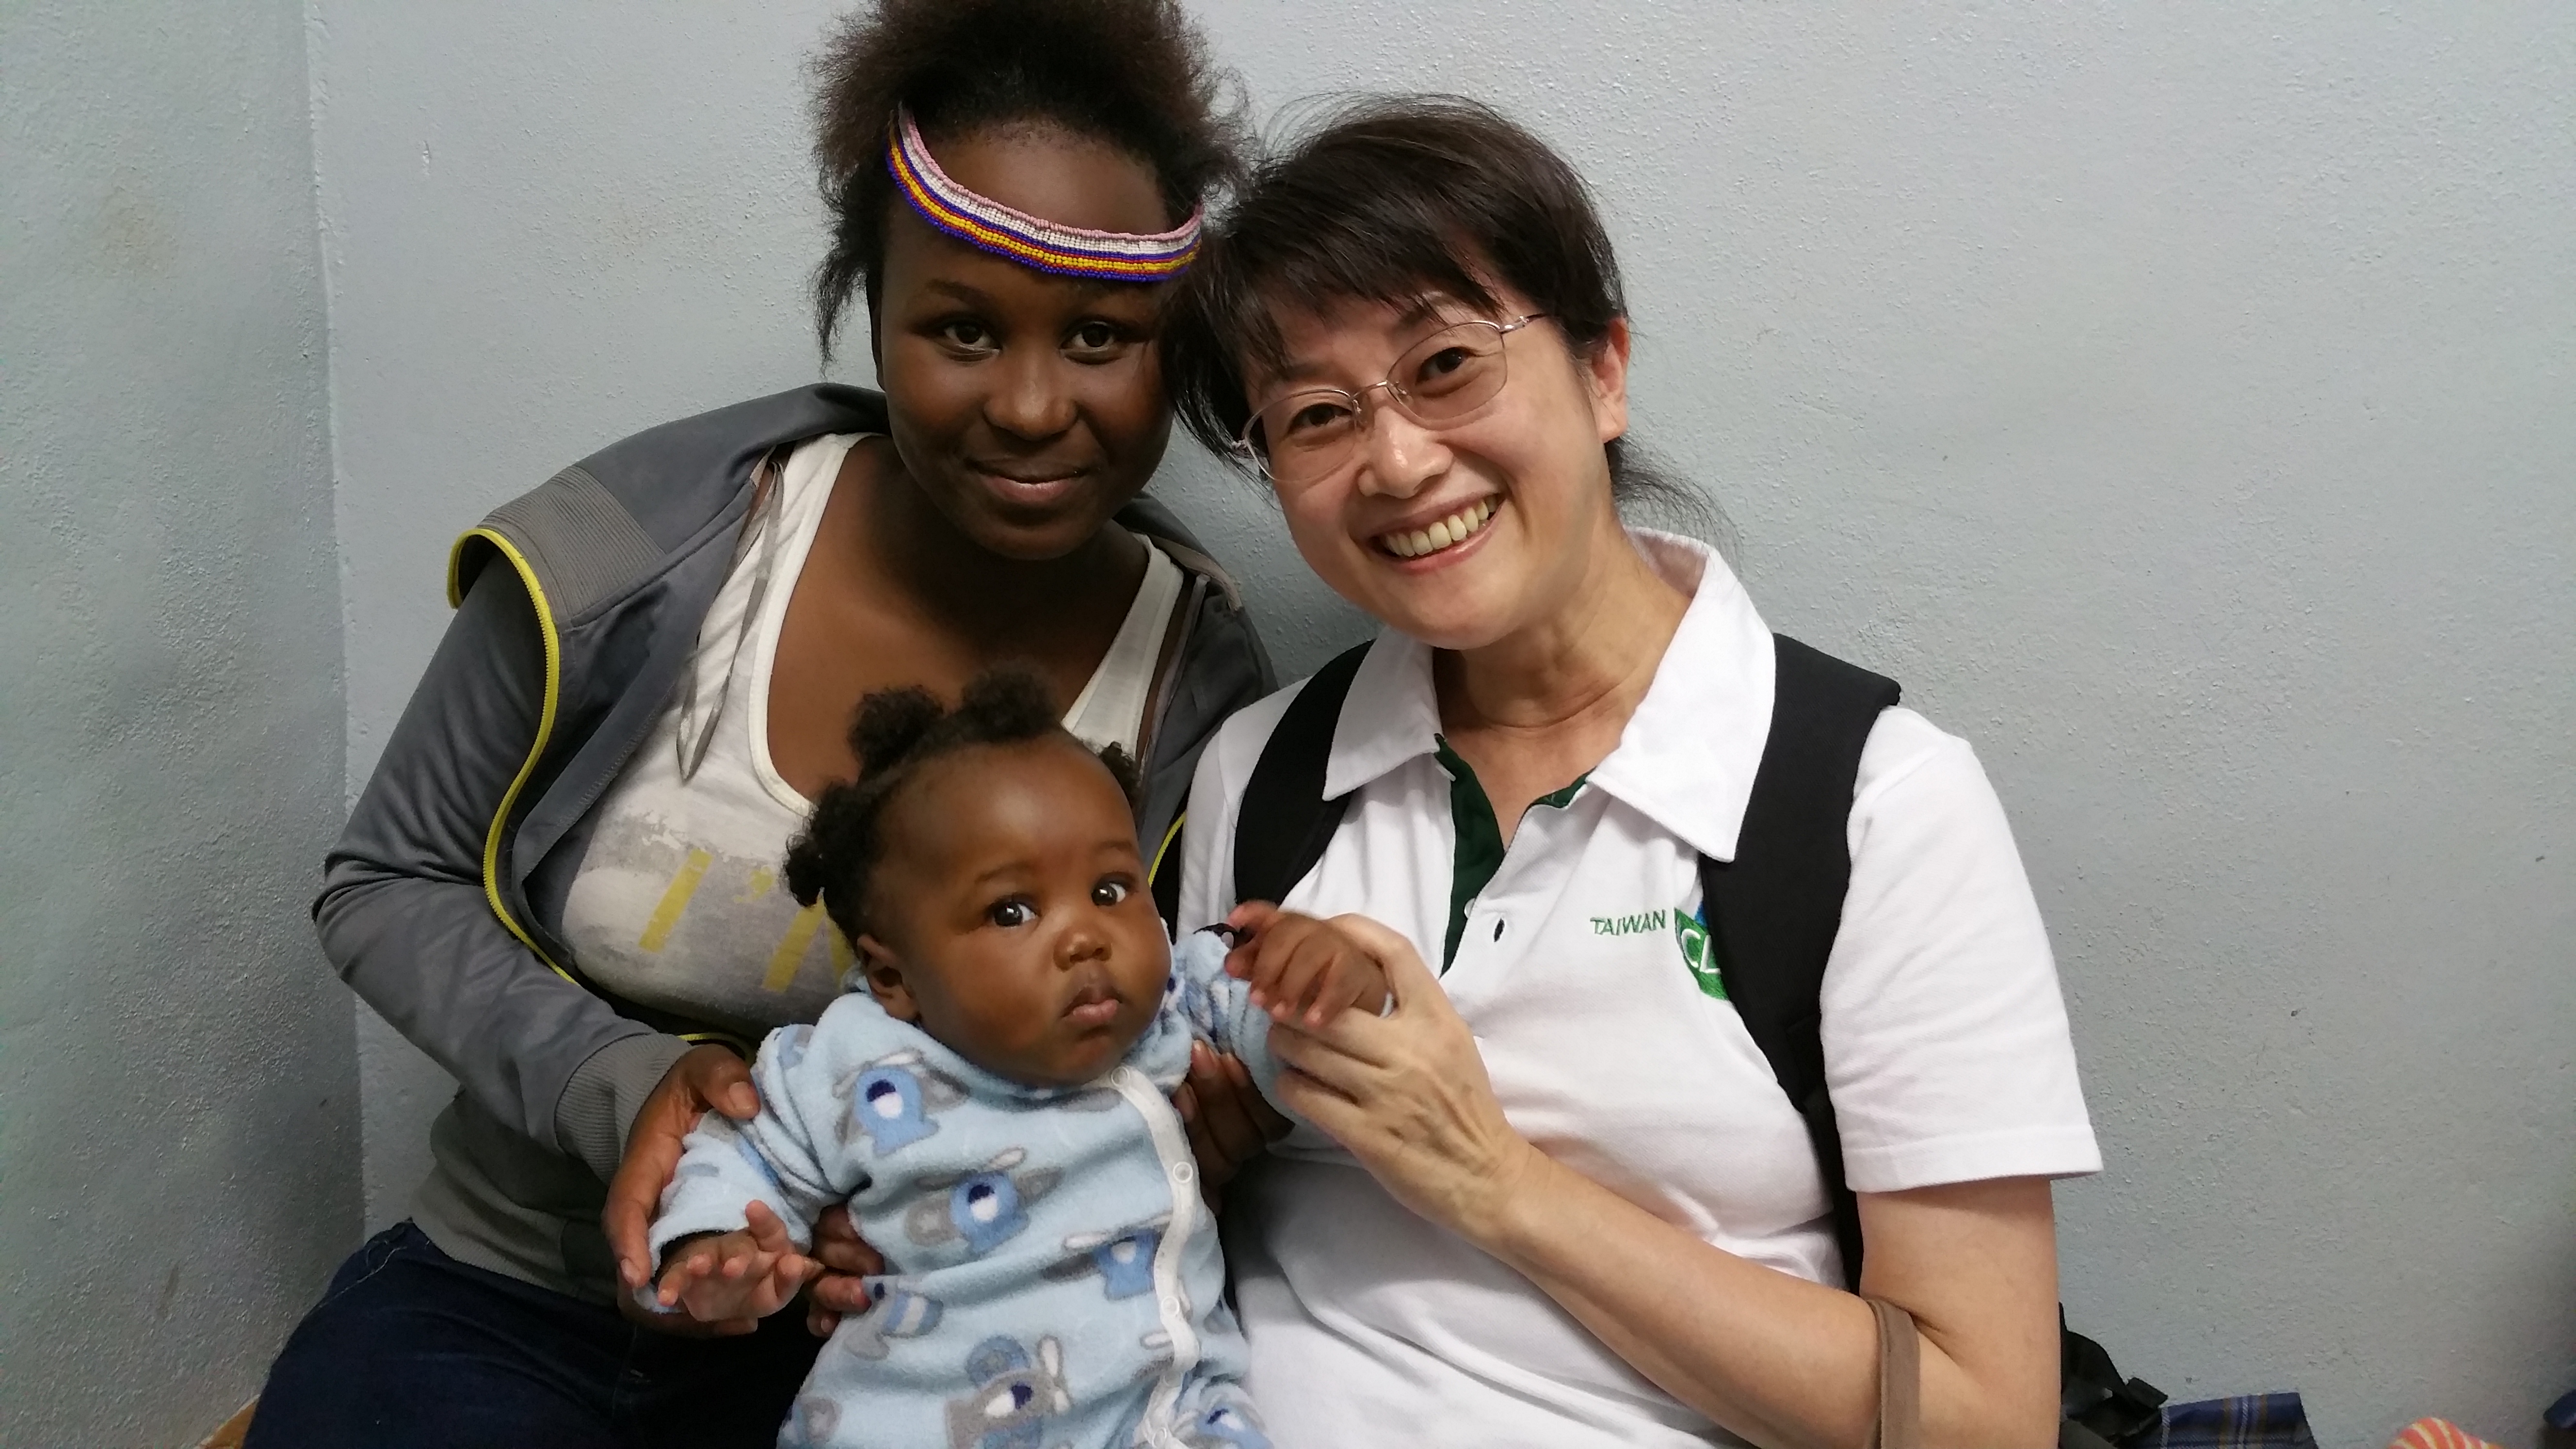 國合會108年度海外服務工作團「史瓦帝尼孕產婦及嬰兒保健功能提升計畫」公衛專案志工招募